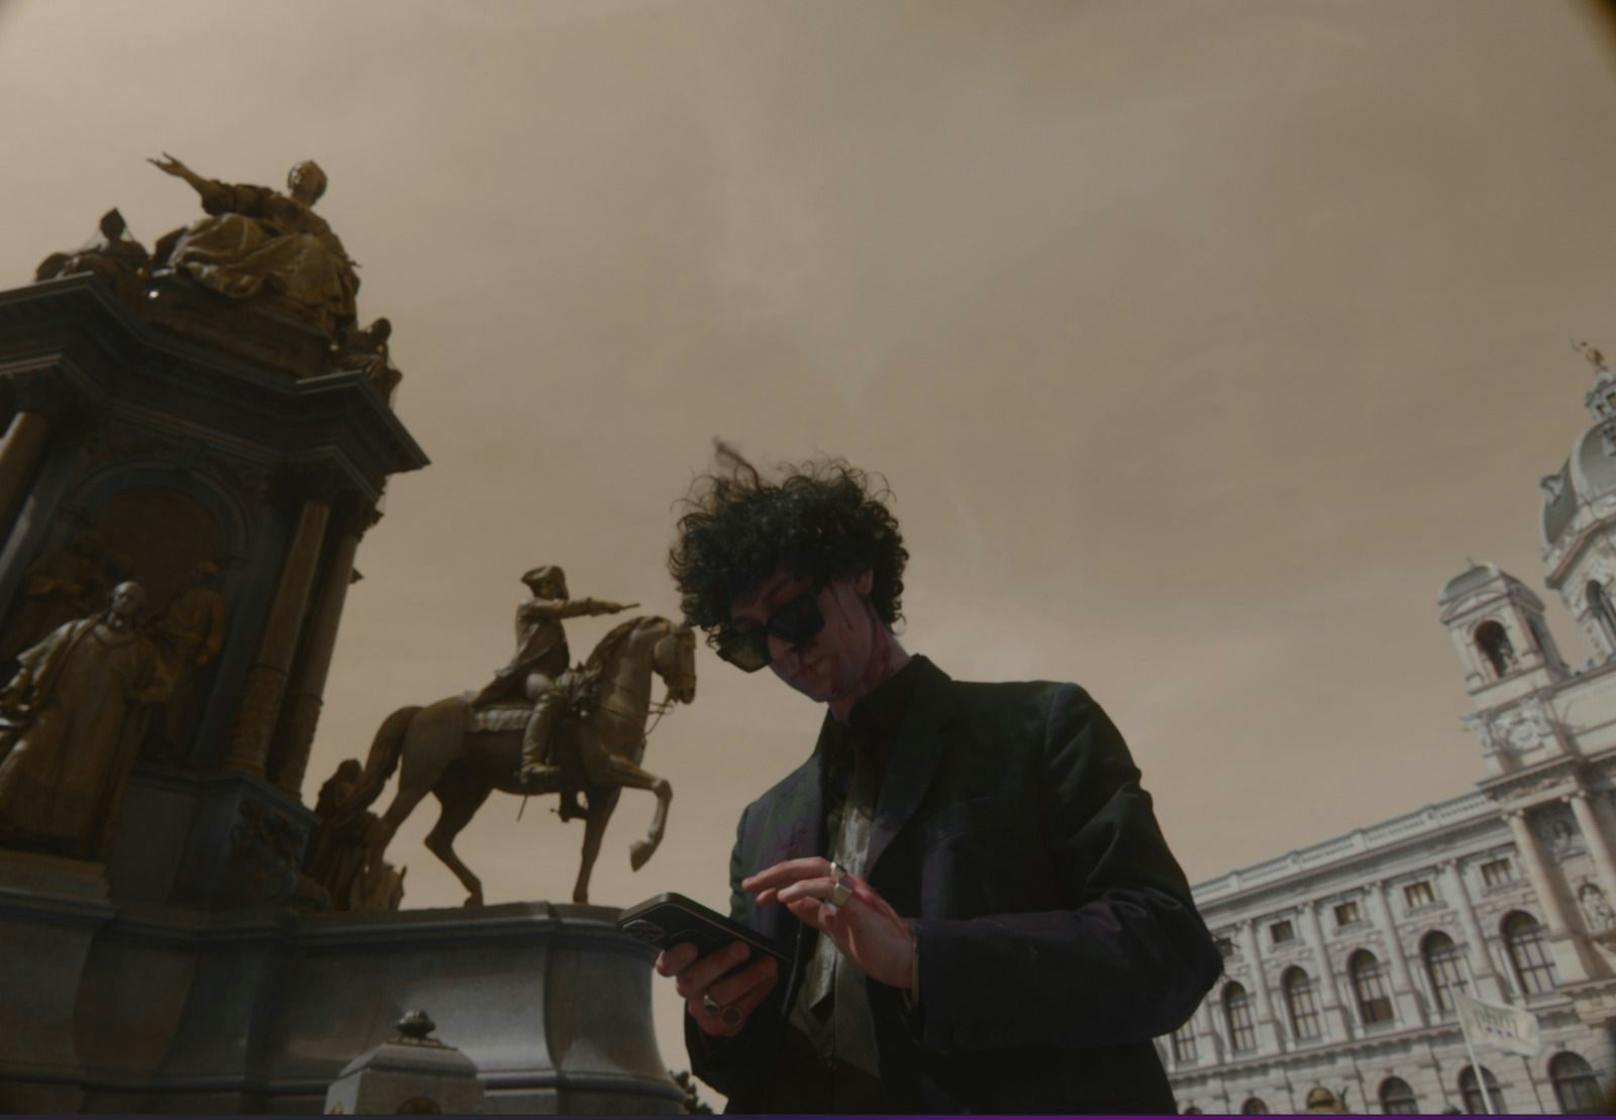 Nikotin drehte zu seinem neuen Song "Goldener Traum" sein Video in Wien.